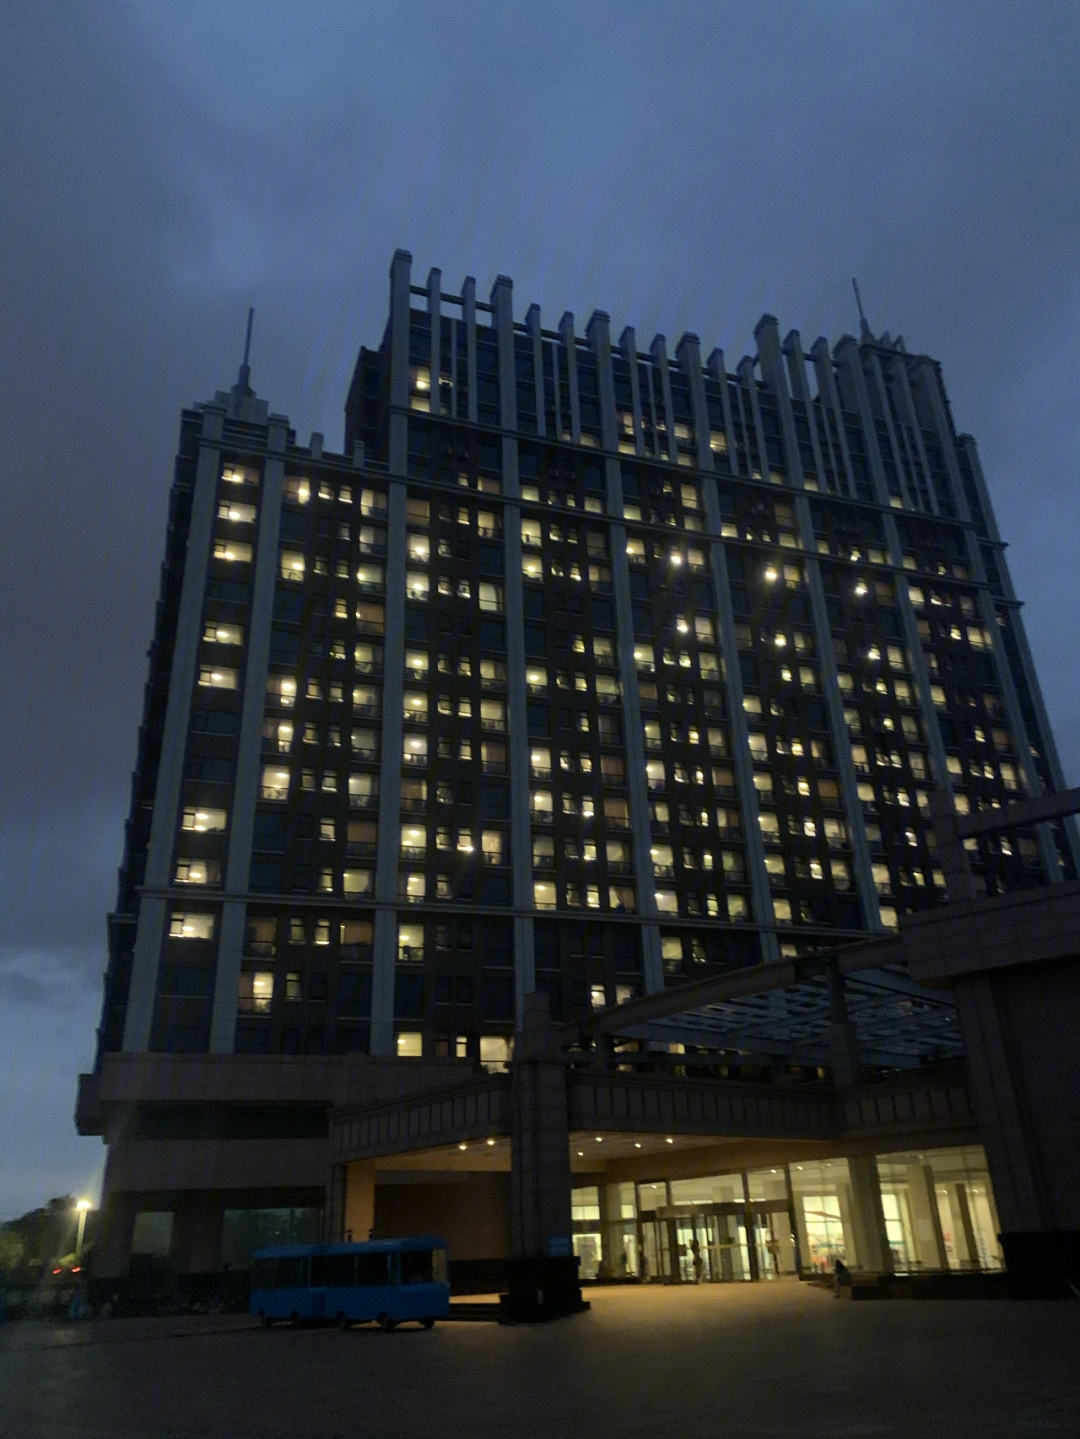 琴岛学院动漫大厦11楼图片